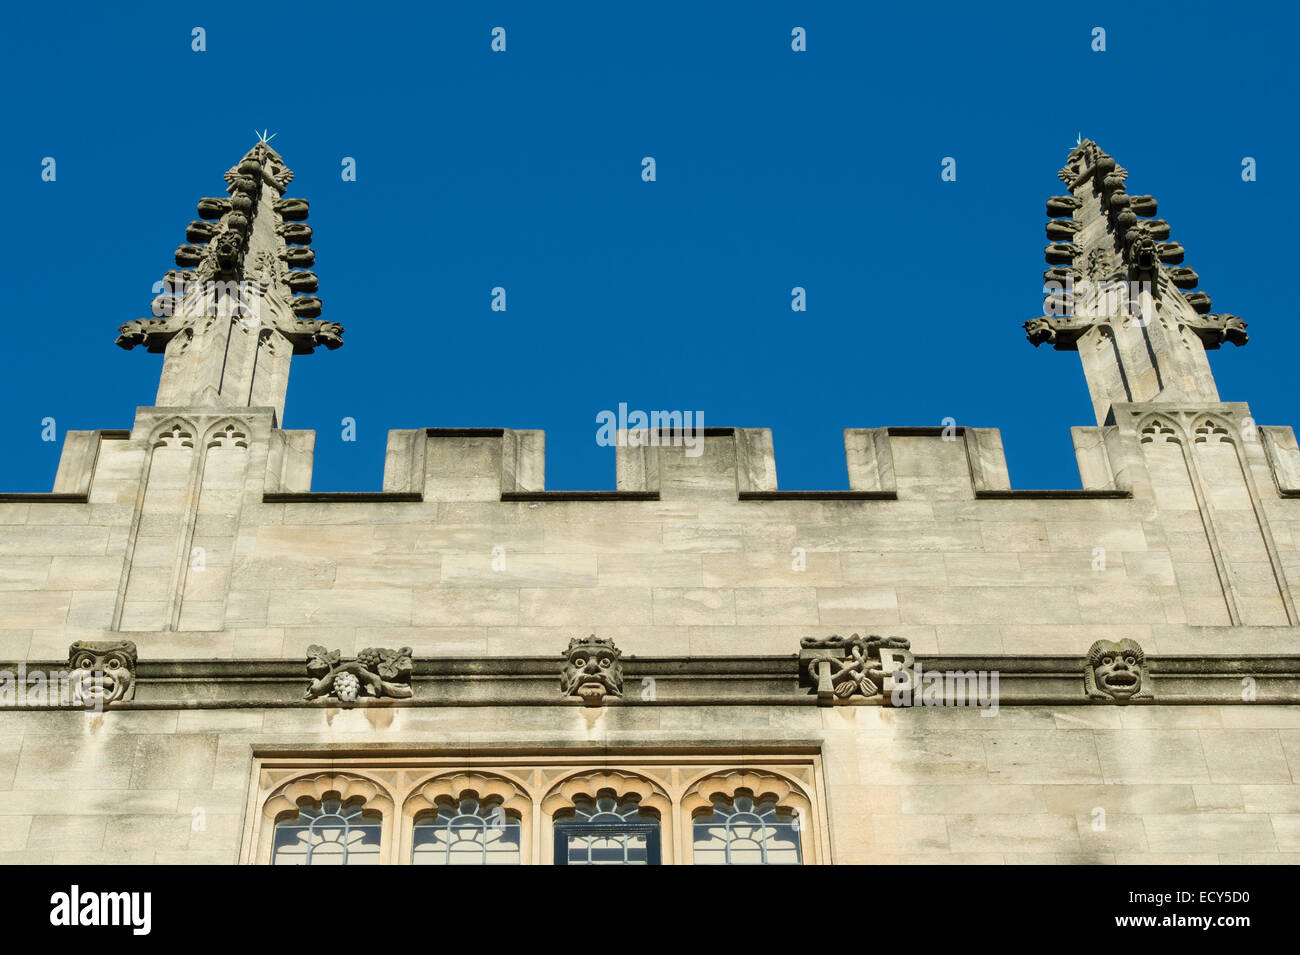 Bâtiment architecture et sculptures sur pierre dans les écoles Quadrangle, Bodleian Library, Oxford, Angleterre Banque D'Images